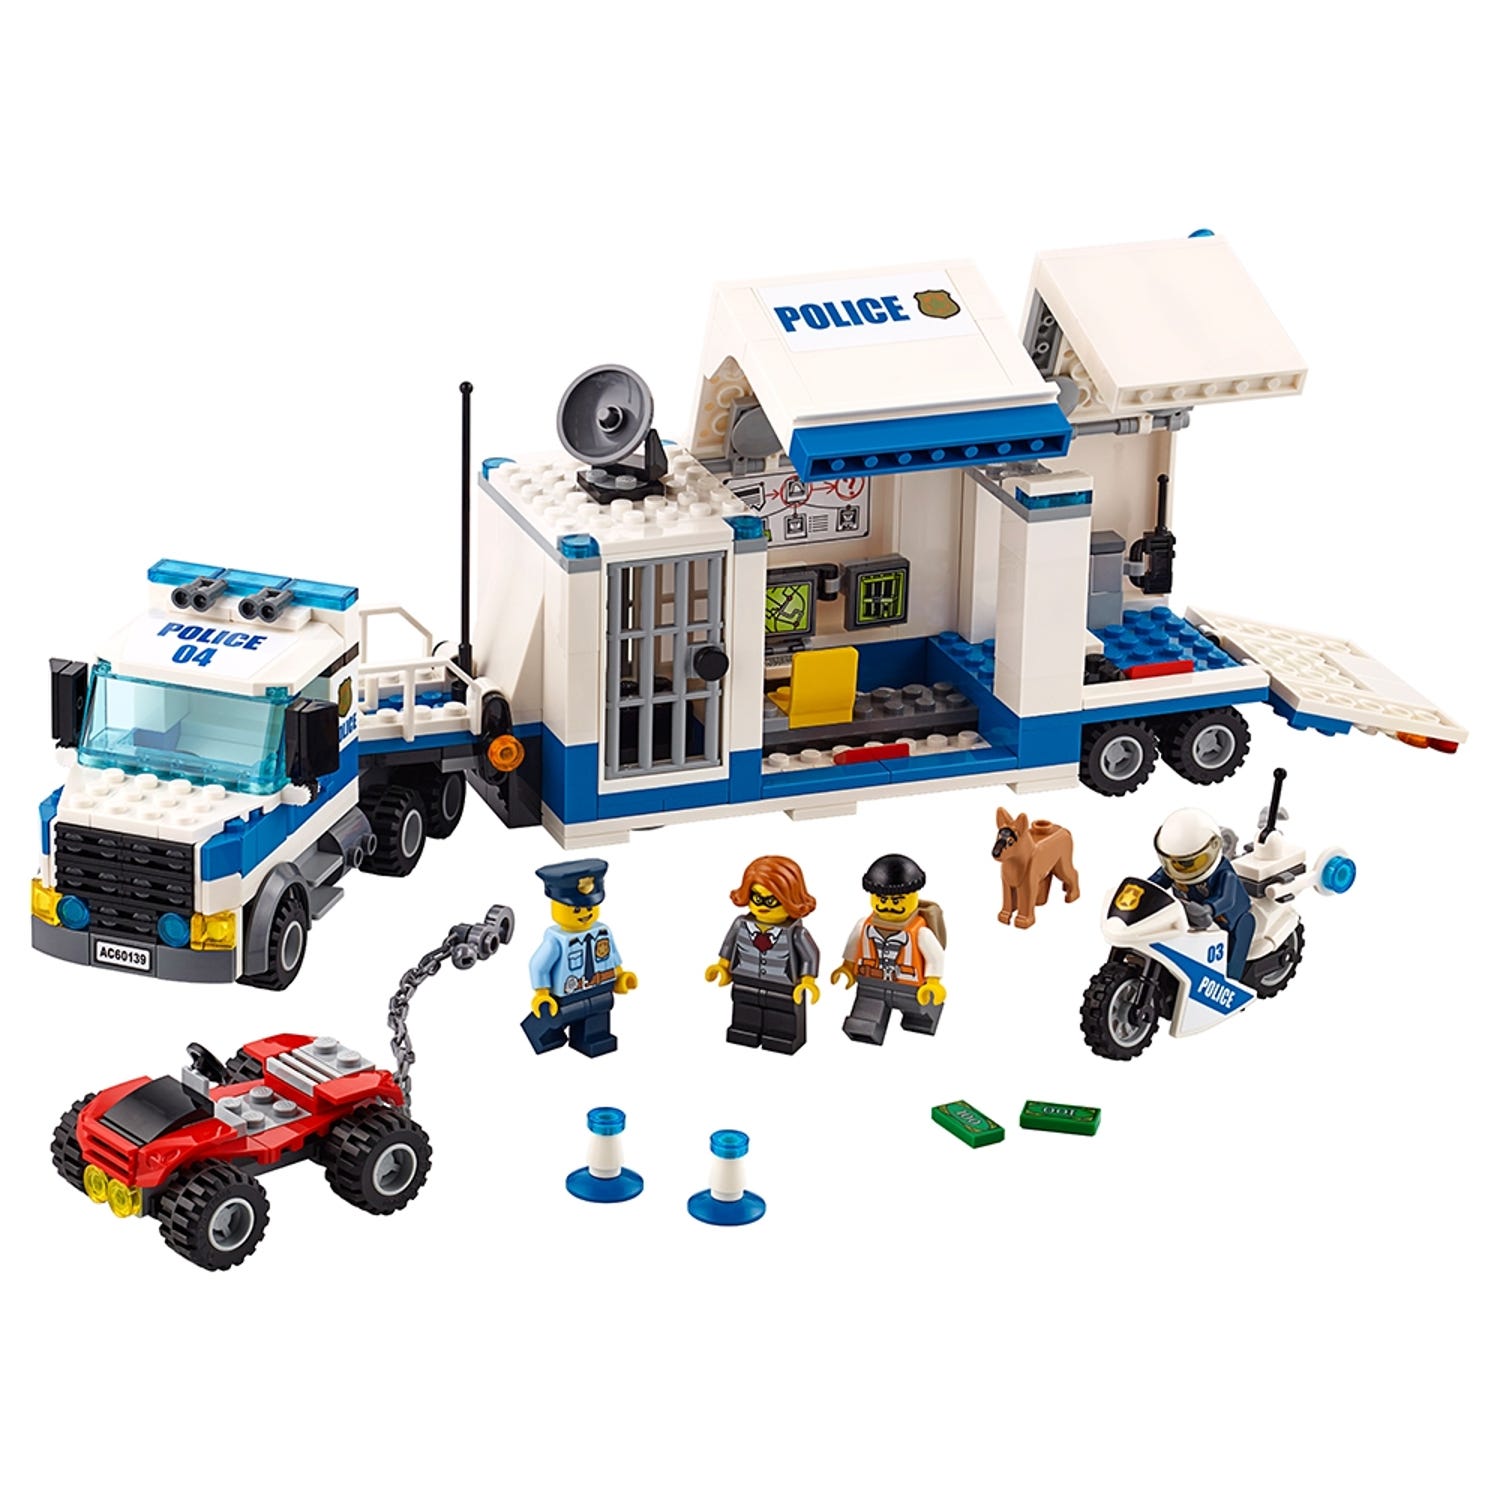 Mobil kommandocentral 60139 | City | LEGO® Shop DK